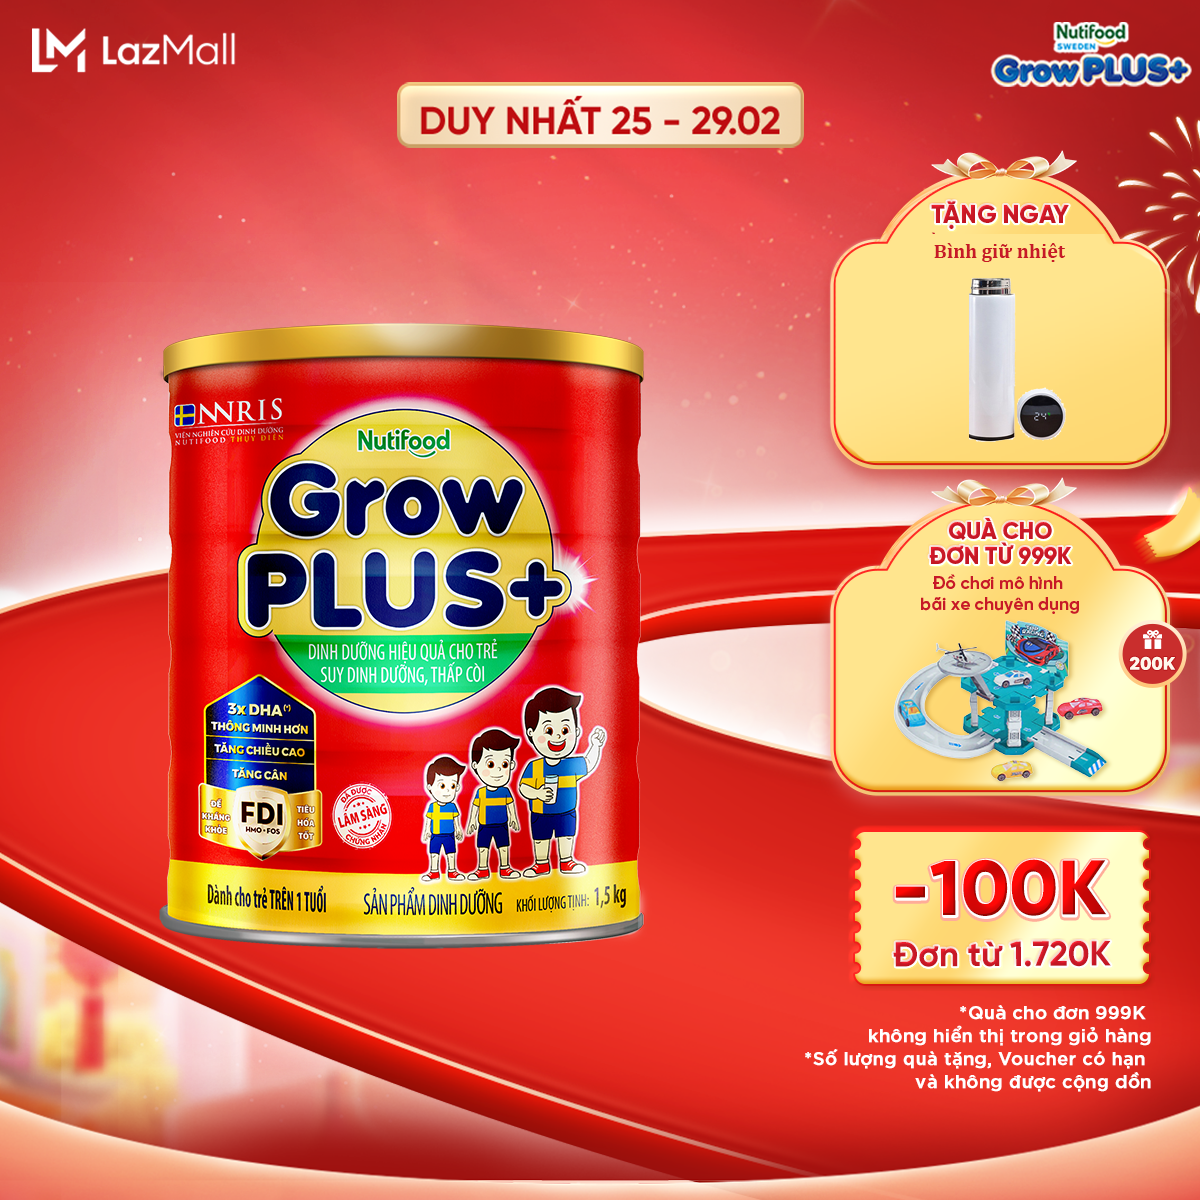 Sữa bột GrowPLUS+ suy dinh dưỡng trên 1 tuổi - Đạt danh hiệu sữa trẻ em số 1 Việt Nam (Lon 1.5kg)